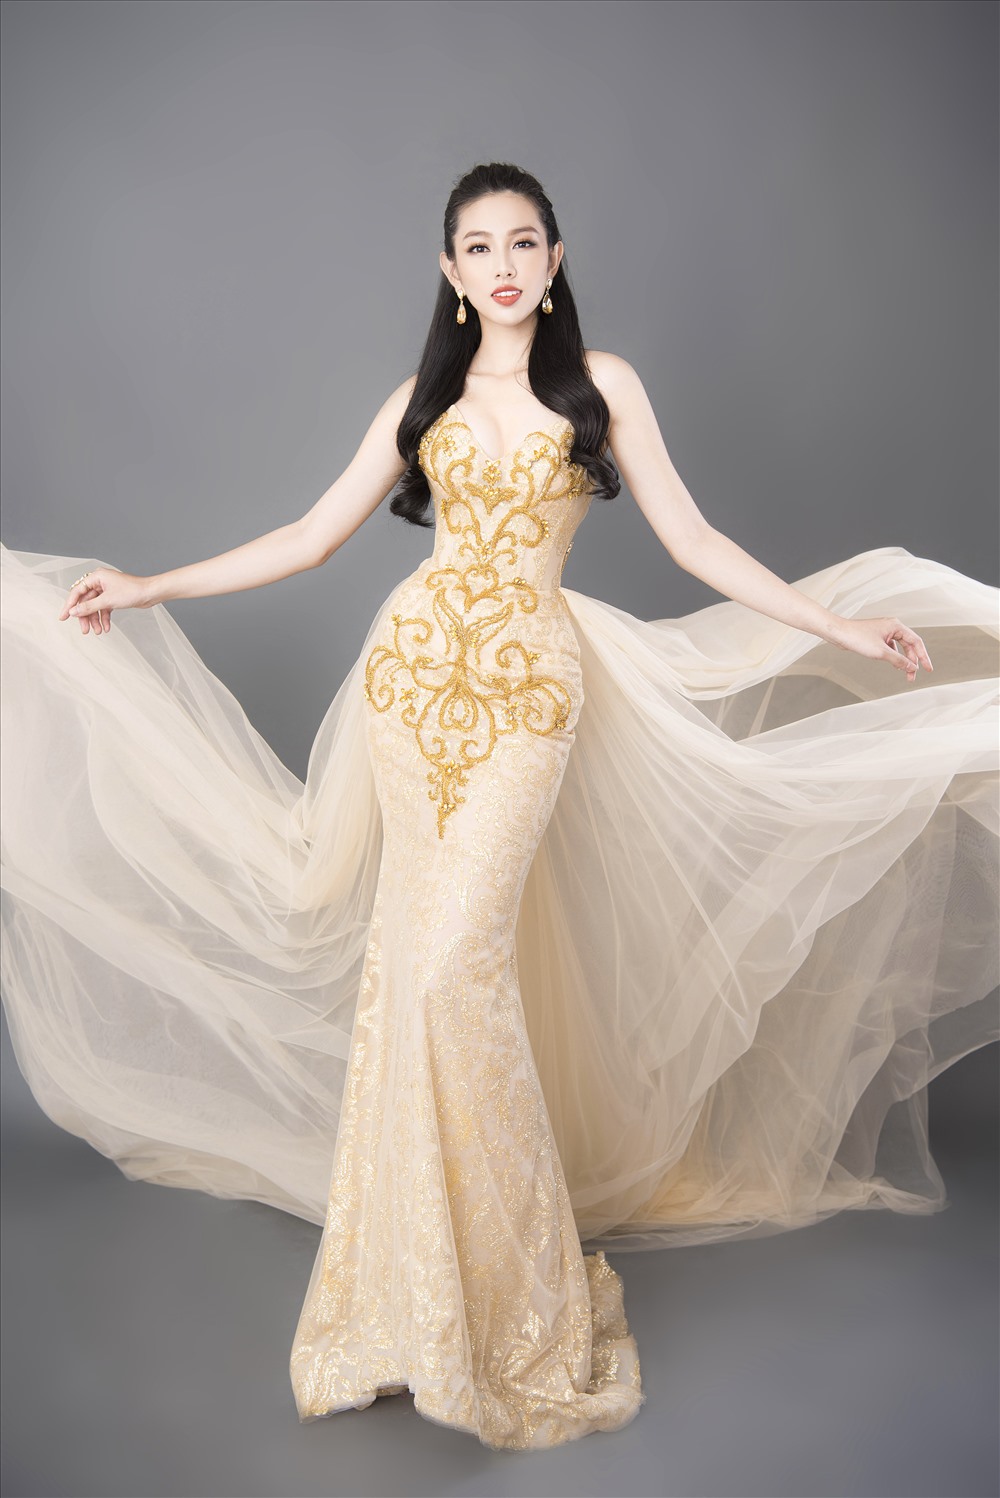 Hoa hậu Thùy Tiên: Chỉ muốn làm việc, chưa nghĩ đến chuyện có người yêu-5